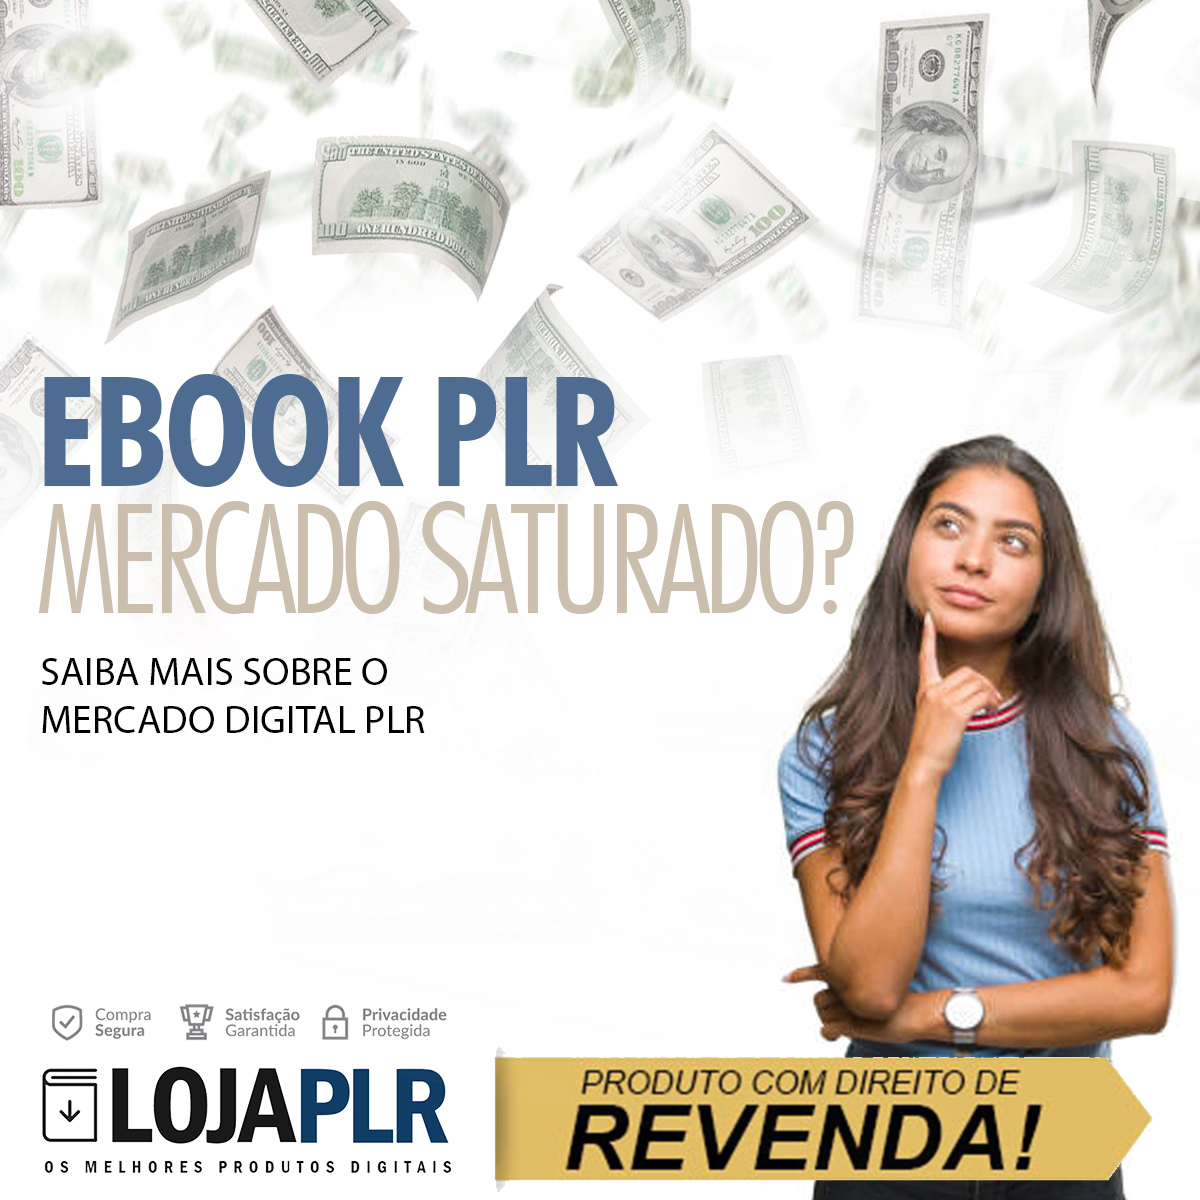 E-book PLR em Português